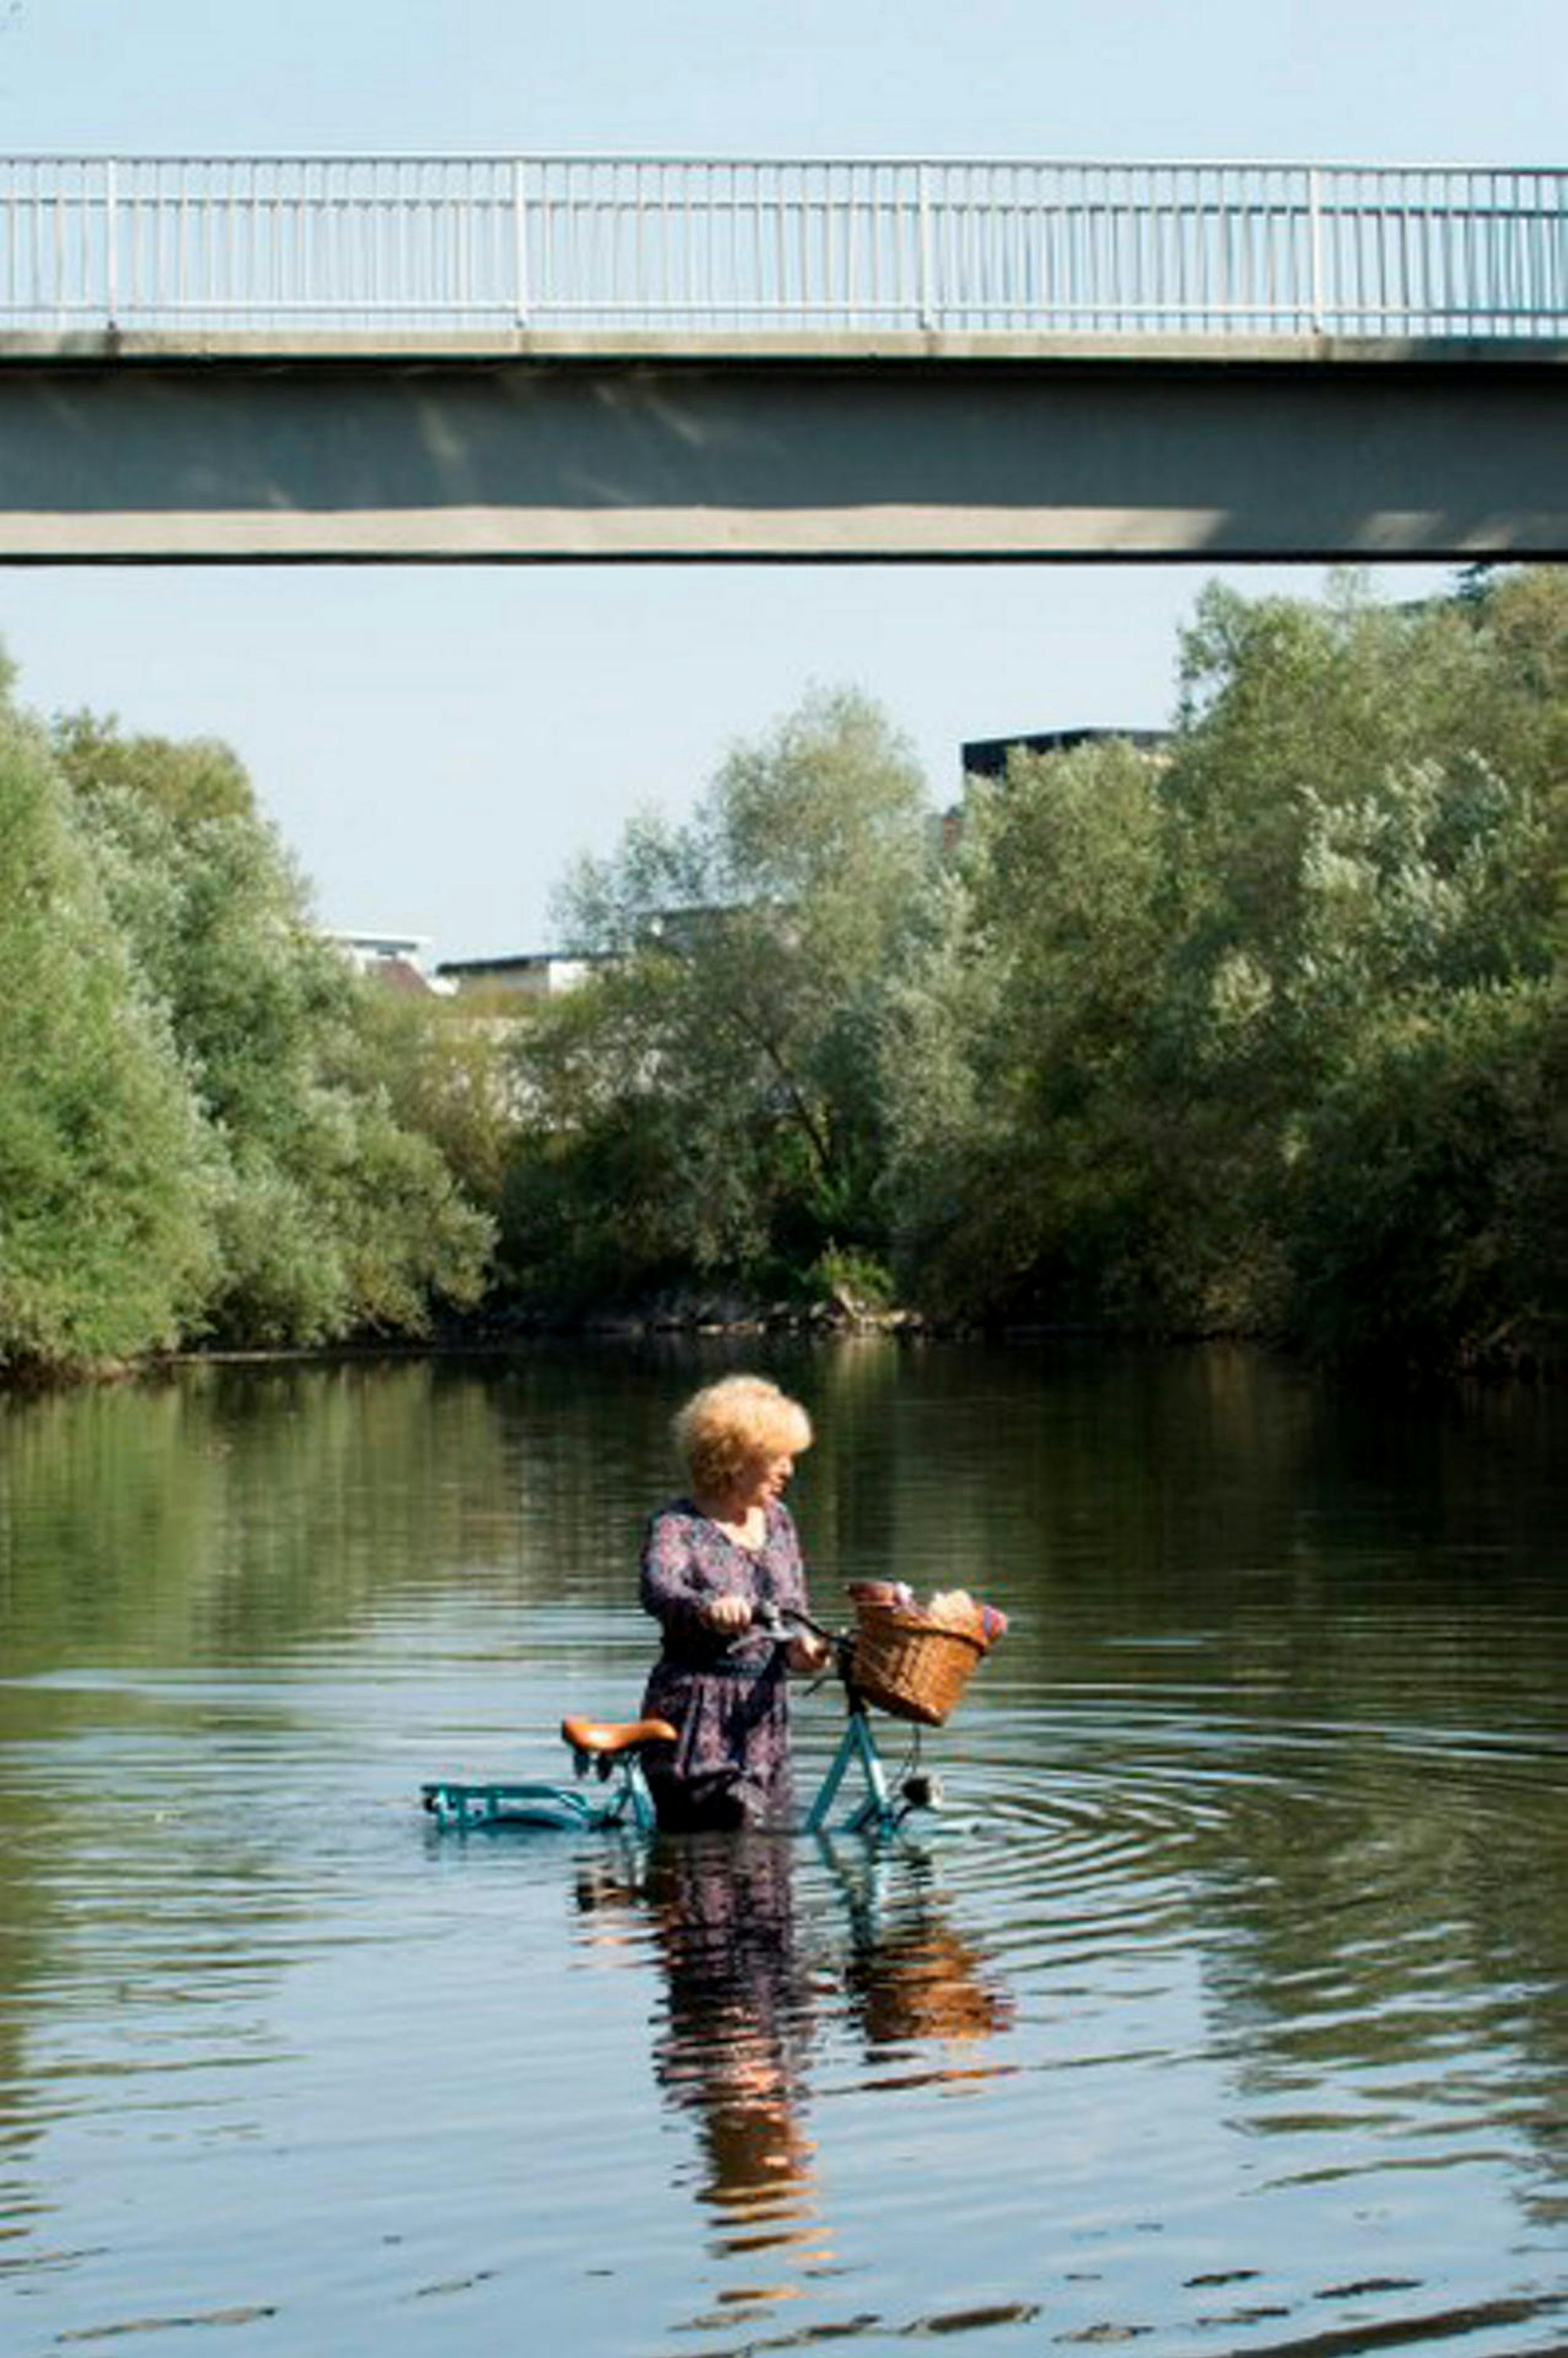 Tiefer als andere stieg Irene Stoev mitsamt Hollandrad in den Fluss.